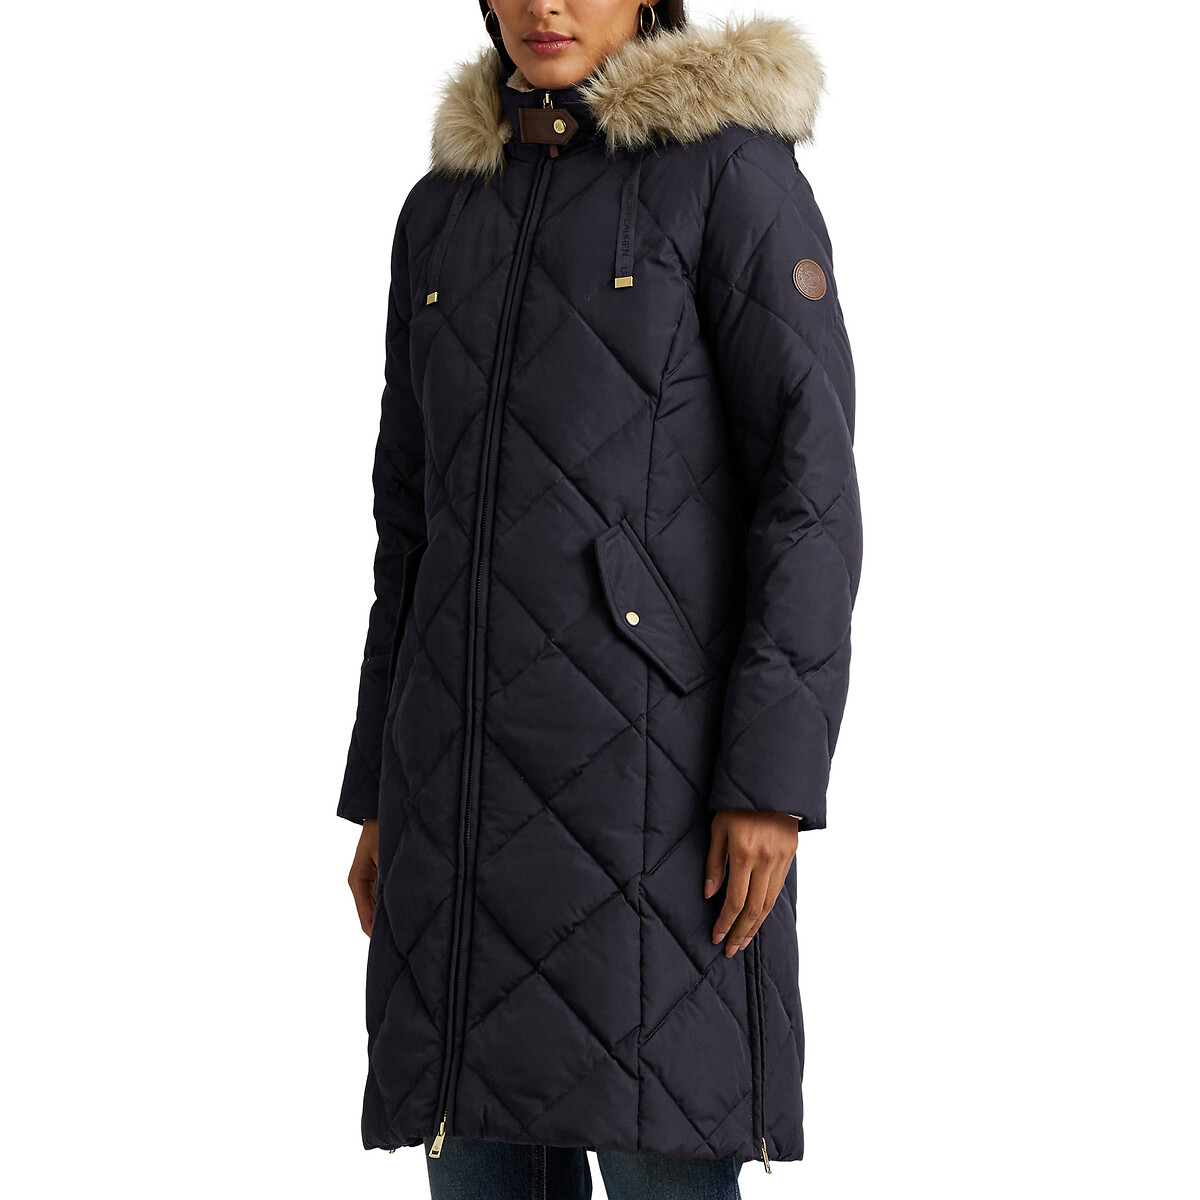 Куртка стеганая средней длины с капюшоном с оторочкой мехом XS синий куртка стеганая средней длины с капюшоном 12 лет 150 см синий